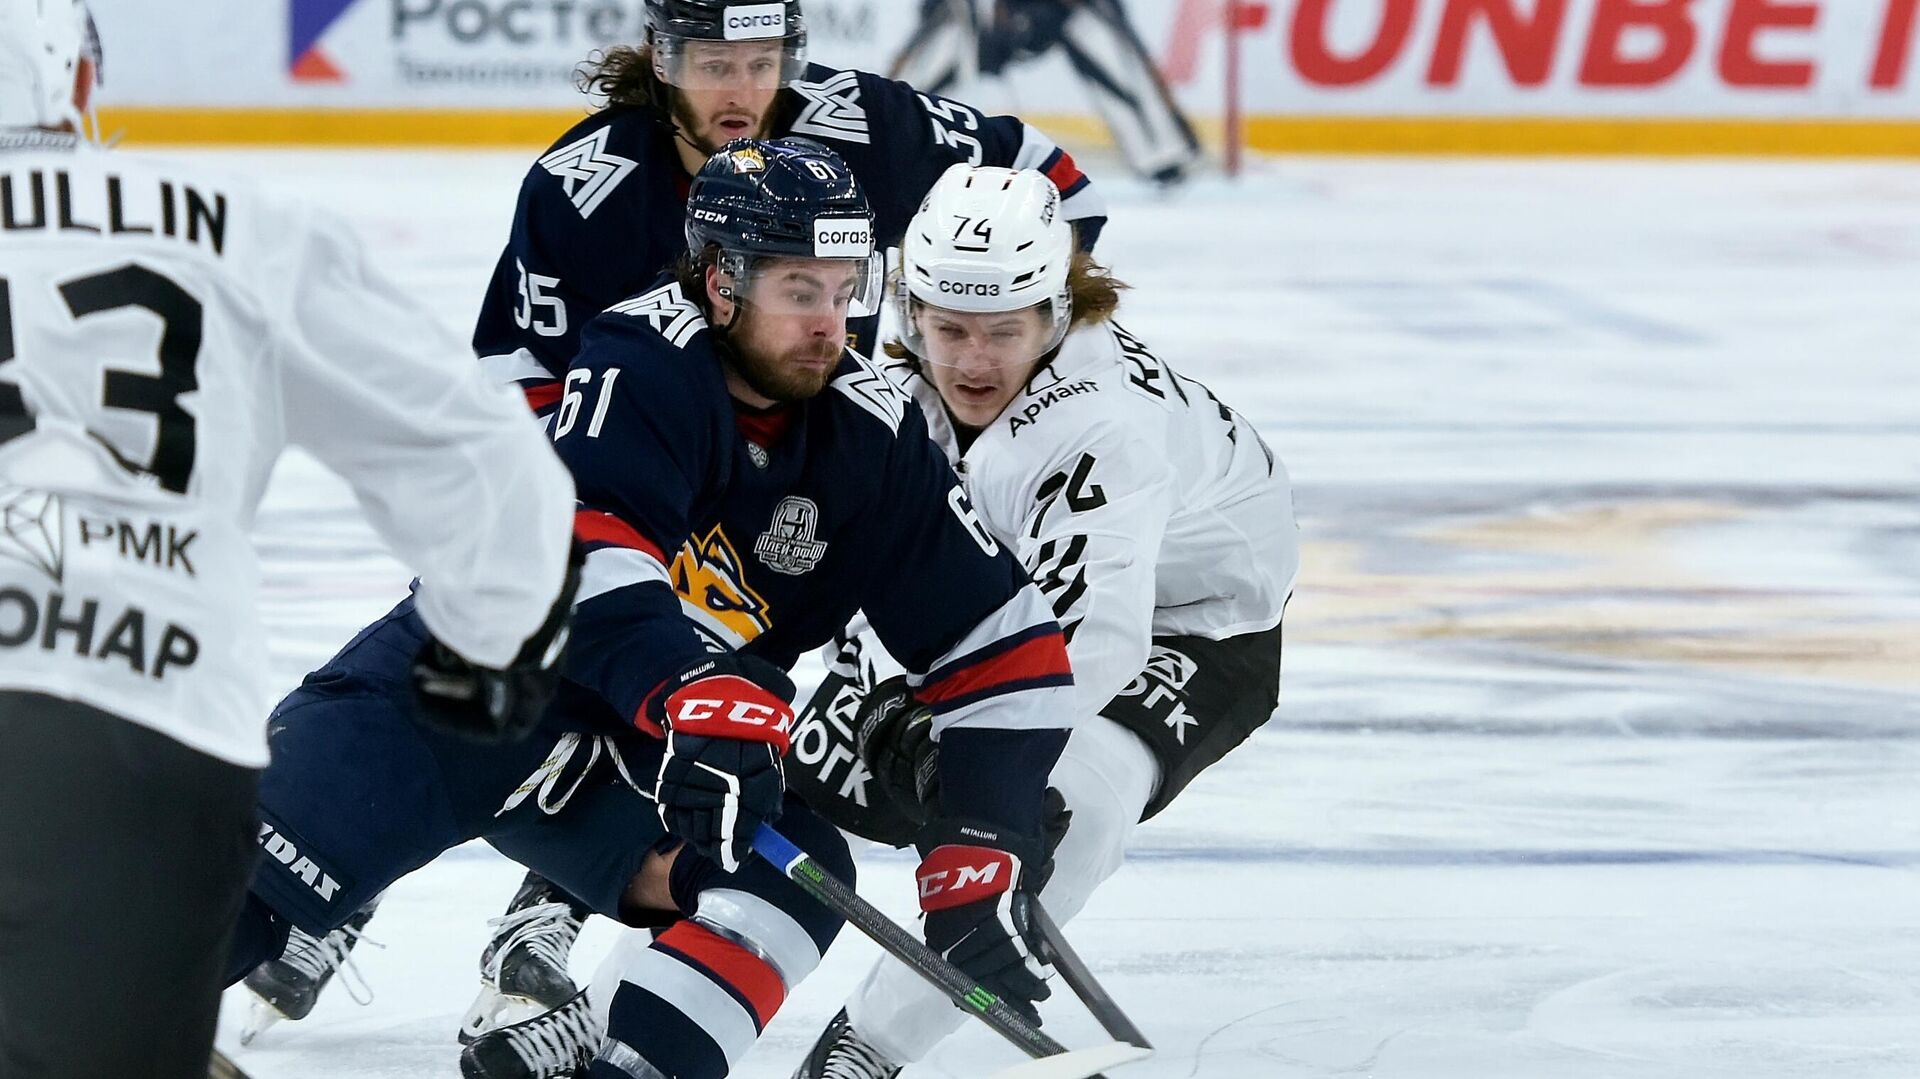 Федерация хоккея России предложила КХЛ новый вариант проведения чемпионата